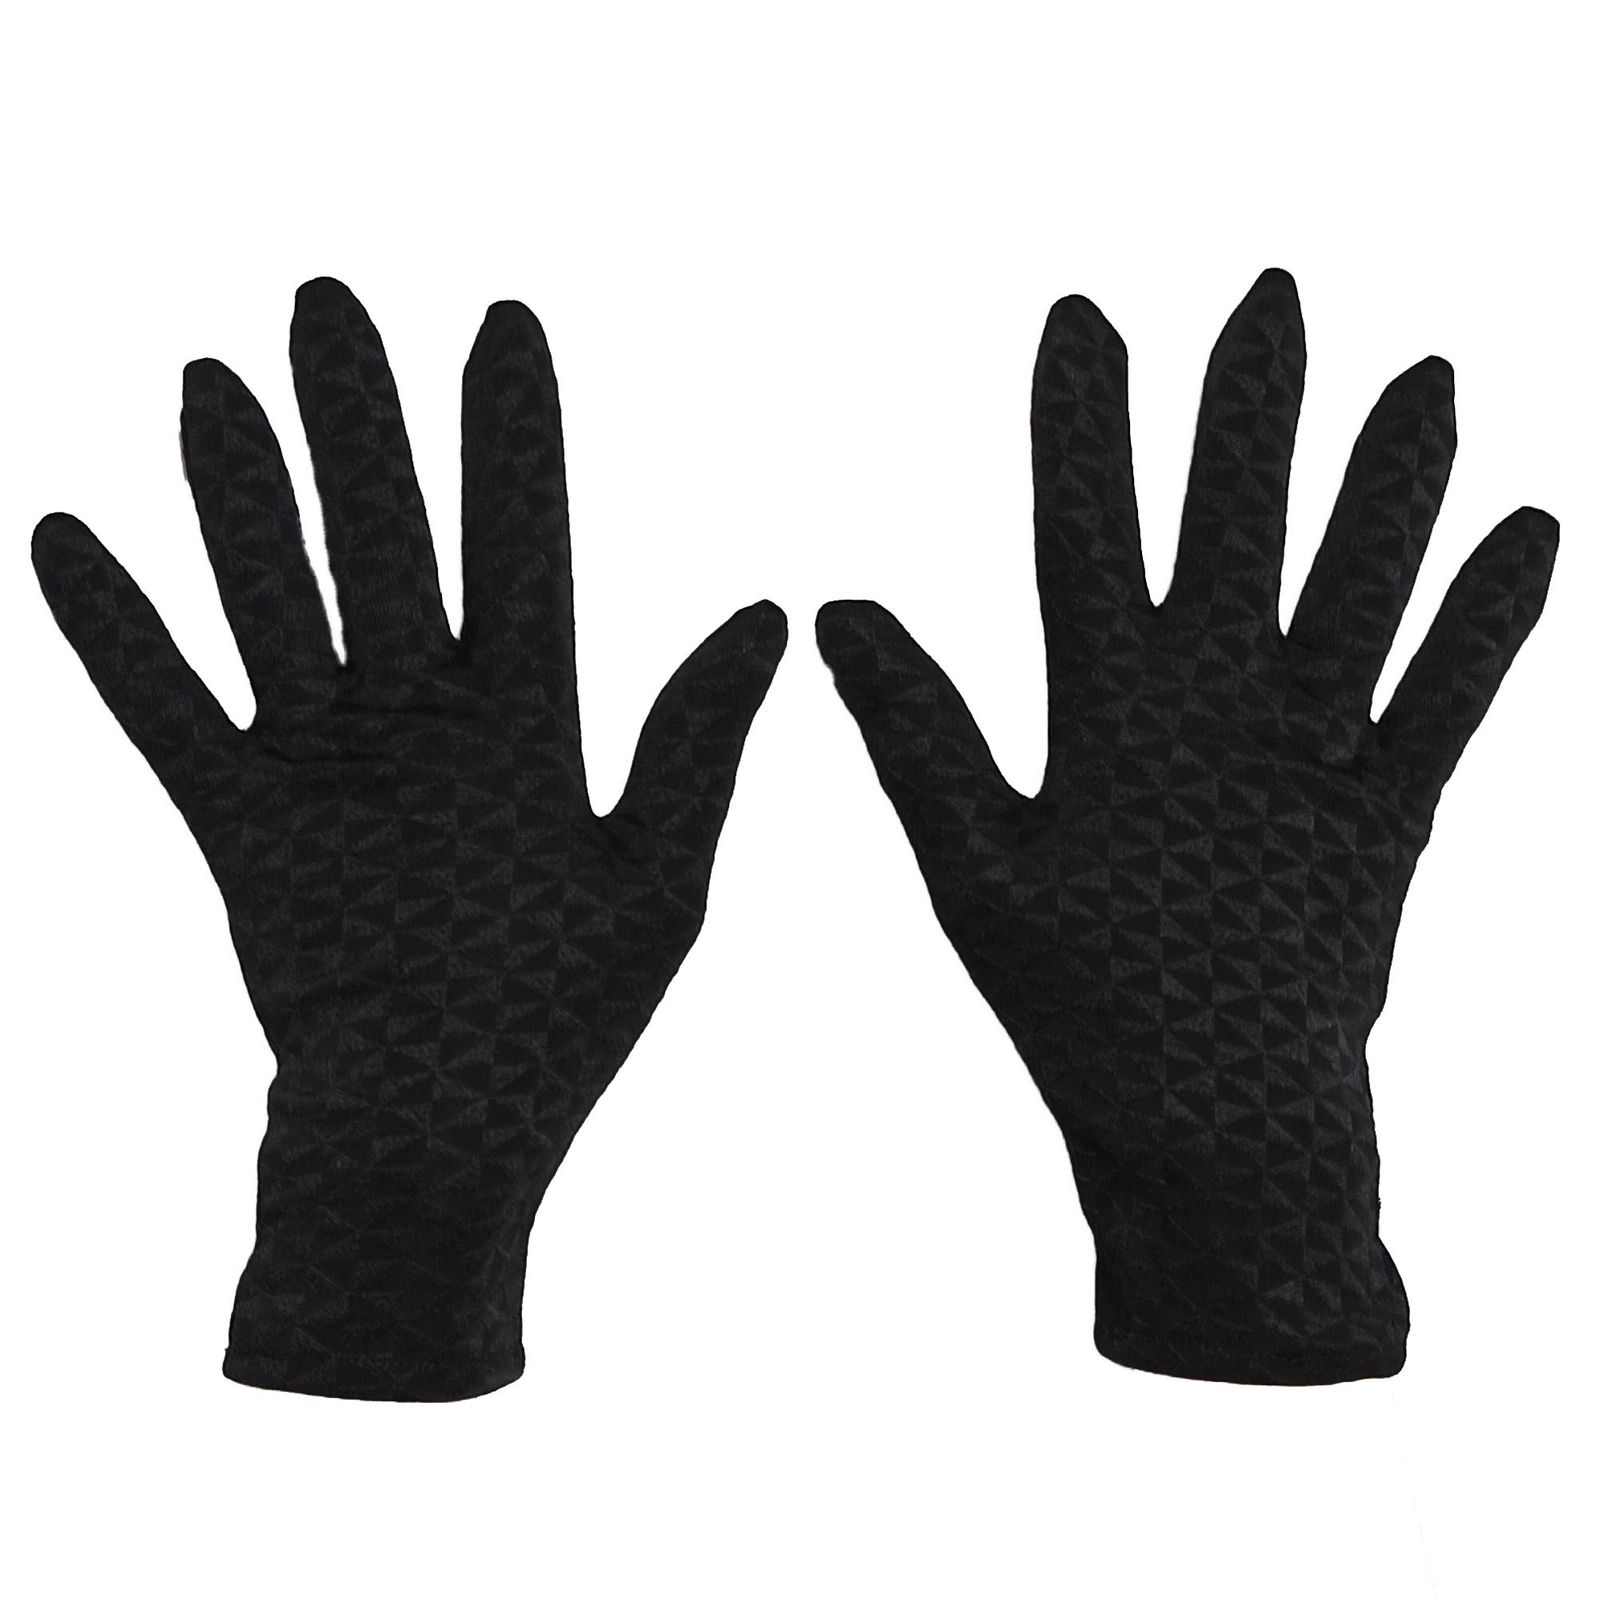 دستکش زنانه  کد 306 -  - 1